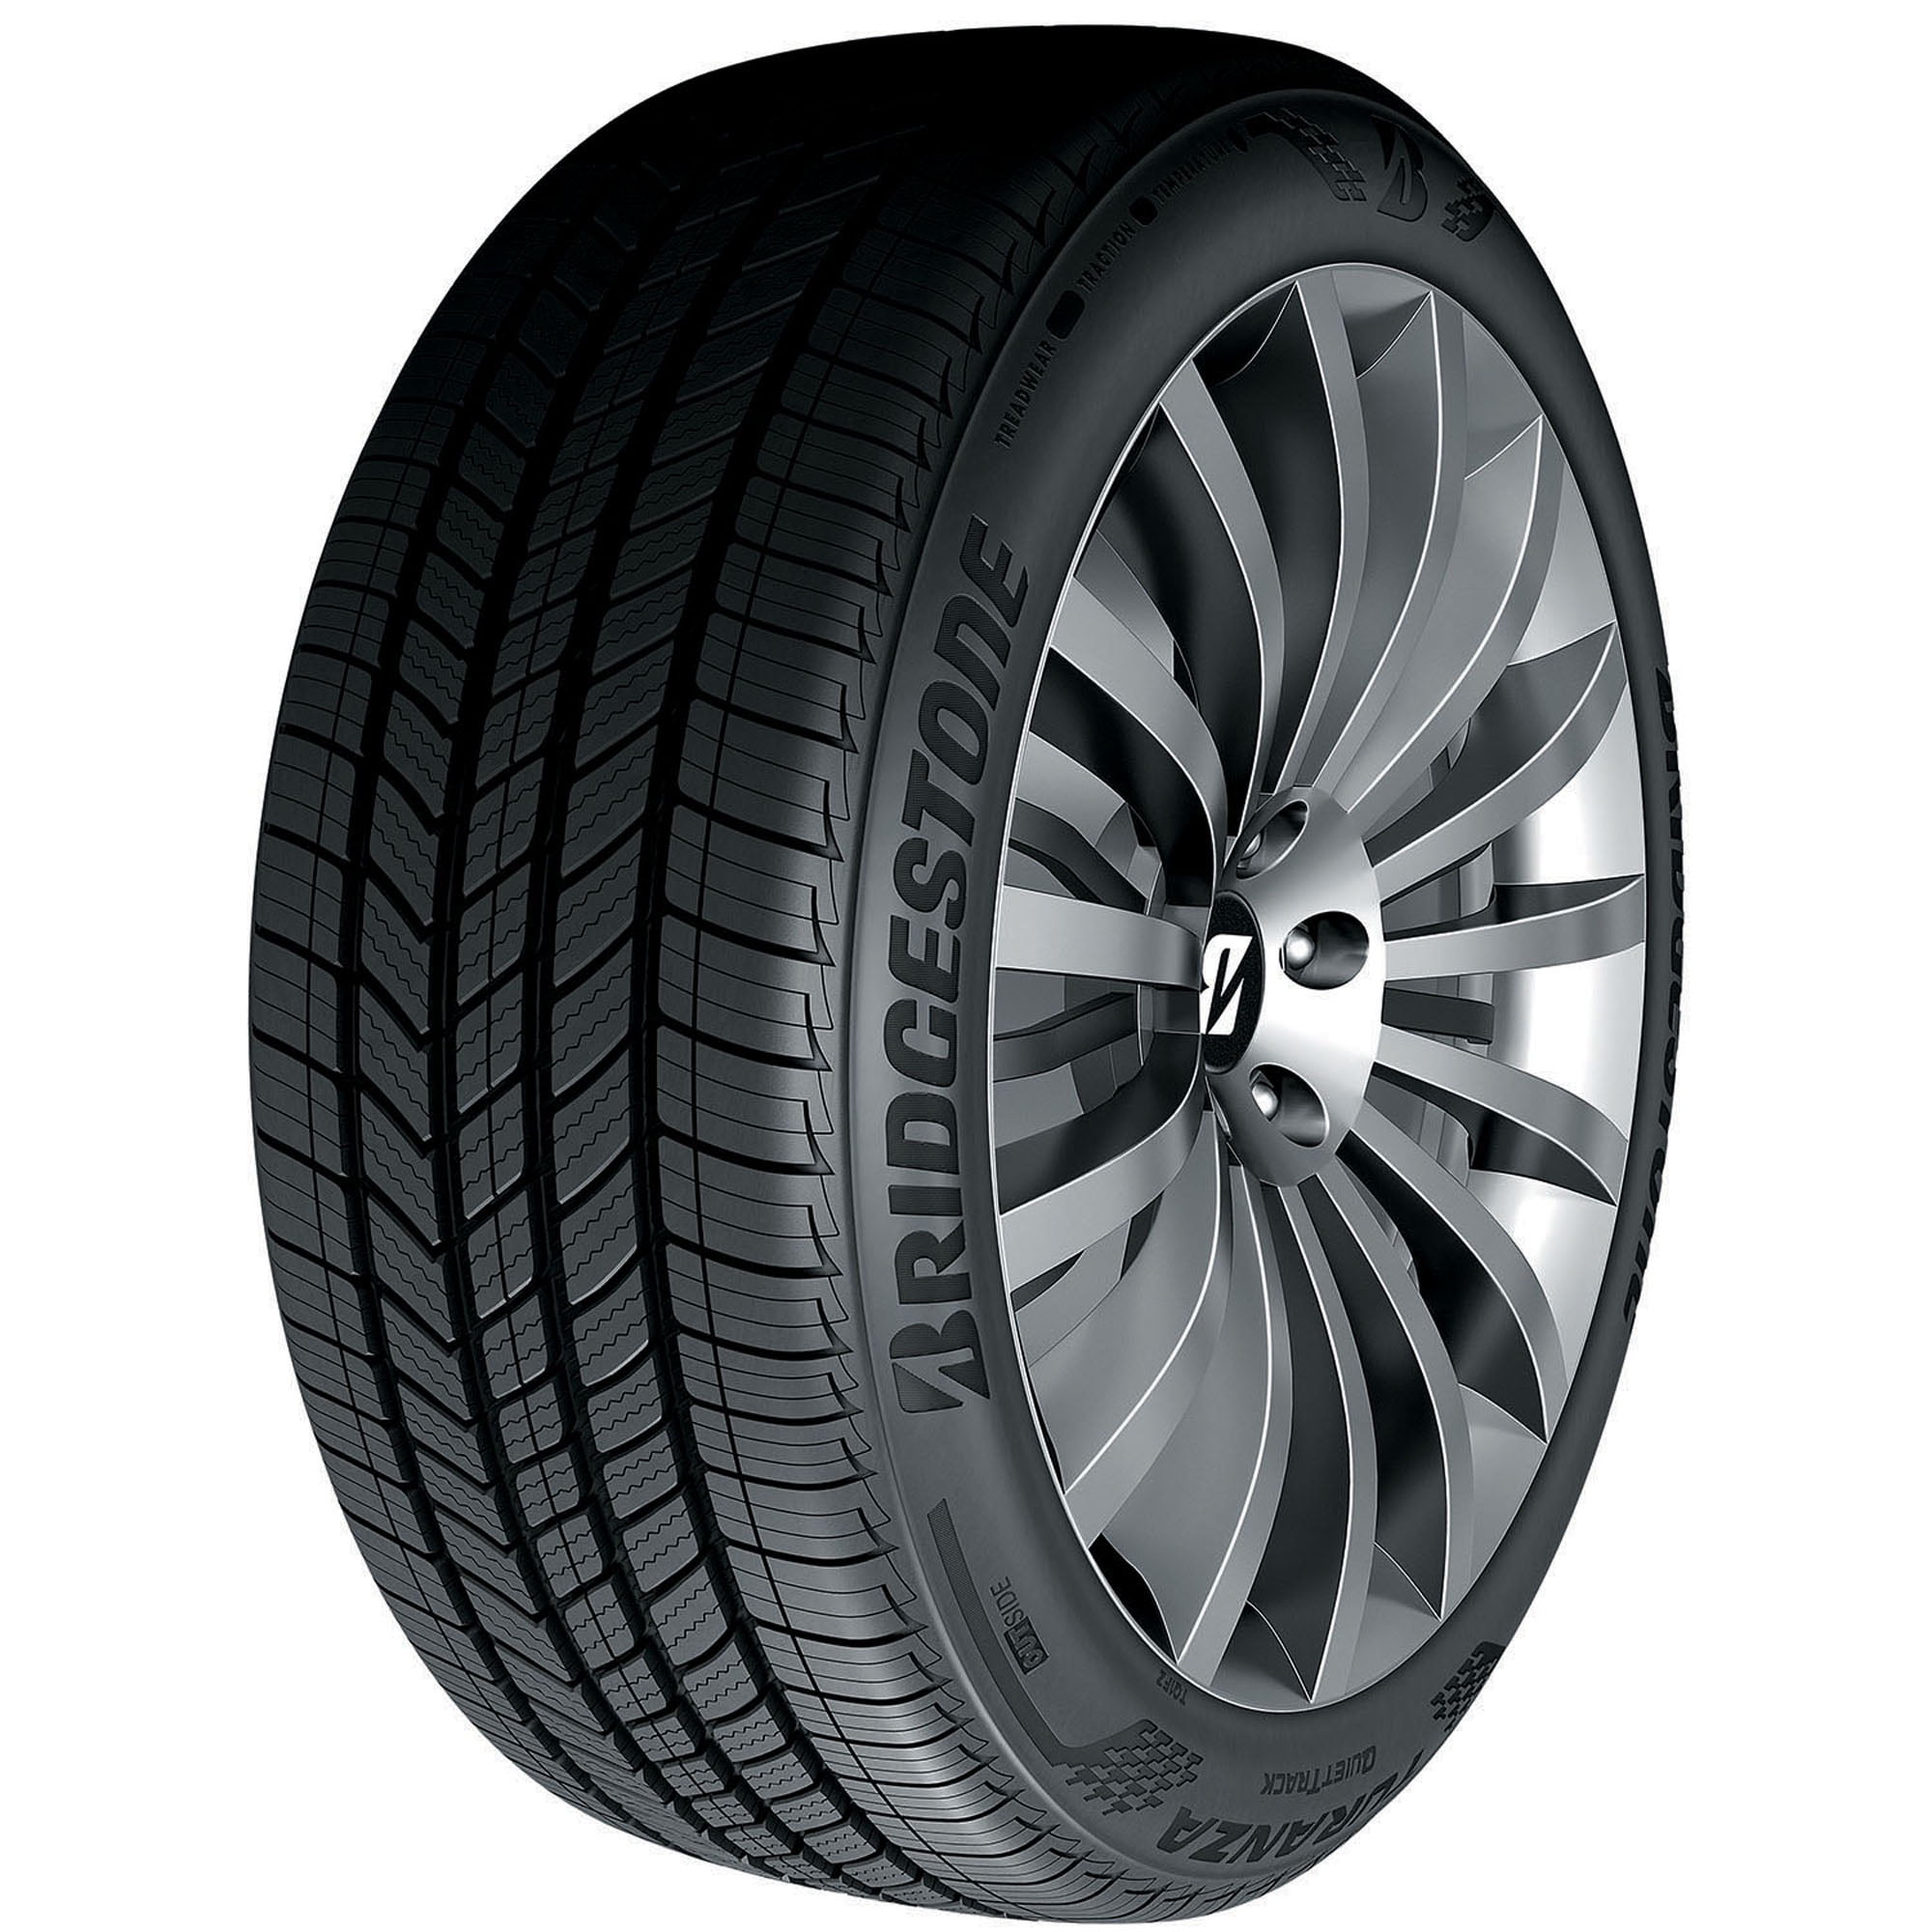 Bridgestone Turanza QuietTrack All Season 215/60R16 95V Passenger Tire